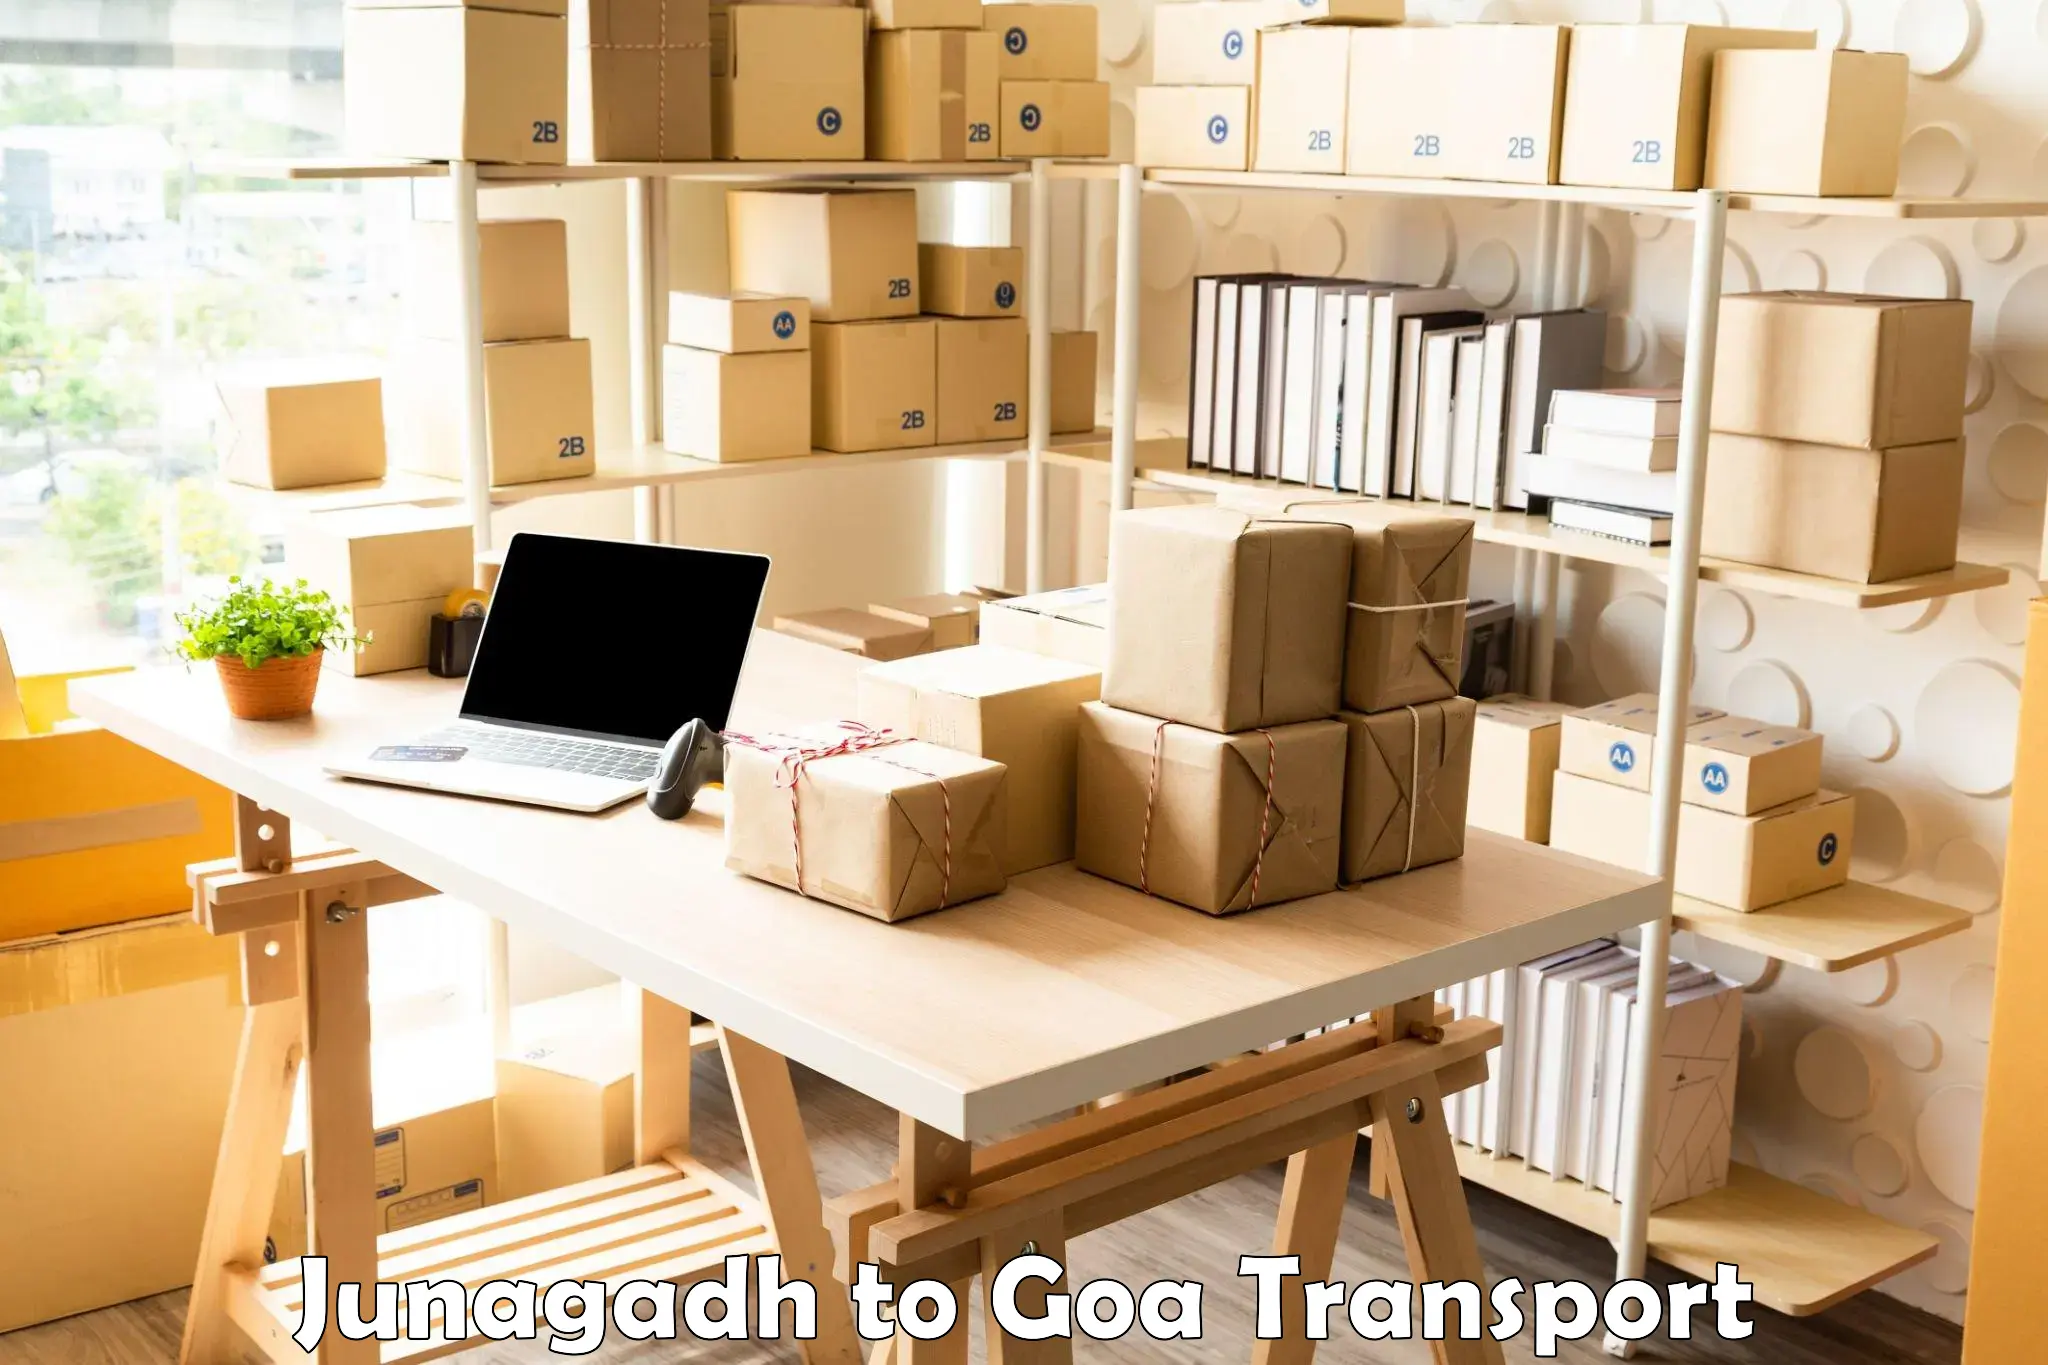 Furniture transport service in Junagadh to Vasco da Gama